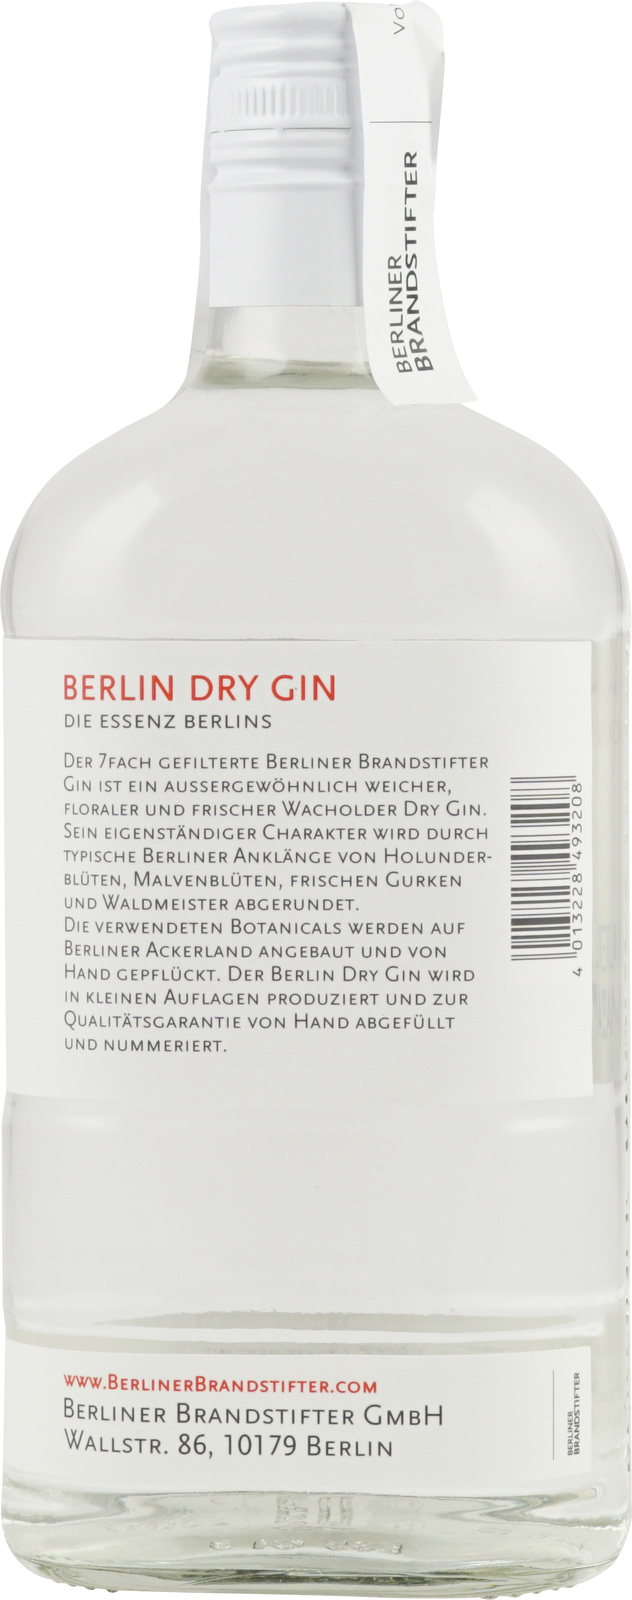 Berliner Brandstifter Dry Gin bei Berlin